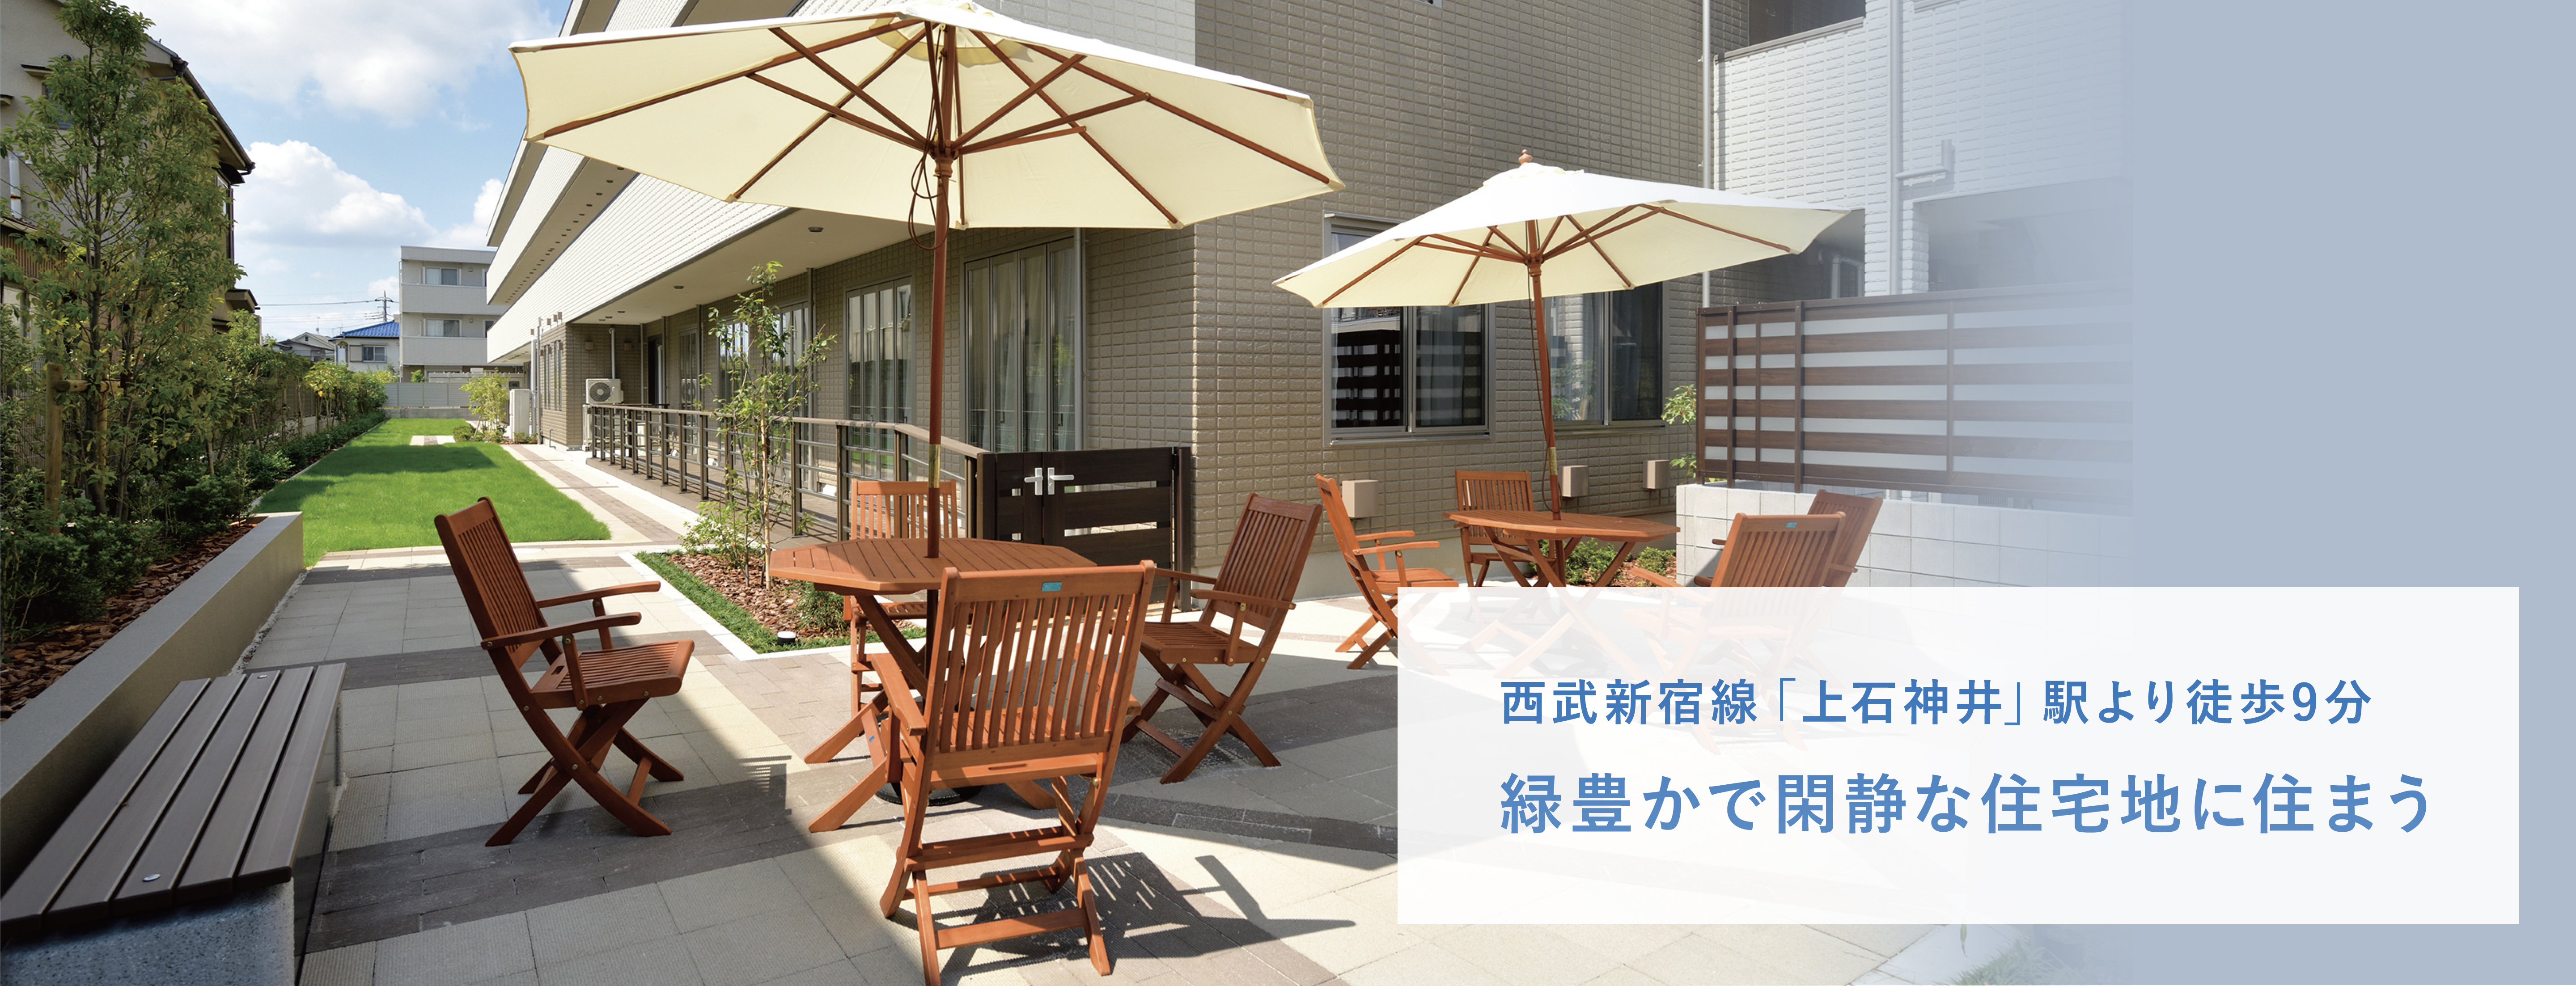 西武新宿線「上石神井」駅より徒歩9分緑豊かで閑静な住宅地に住まう